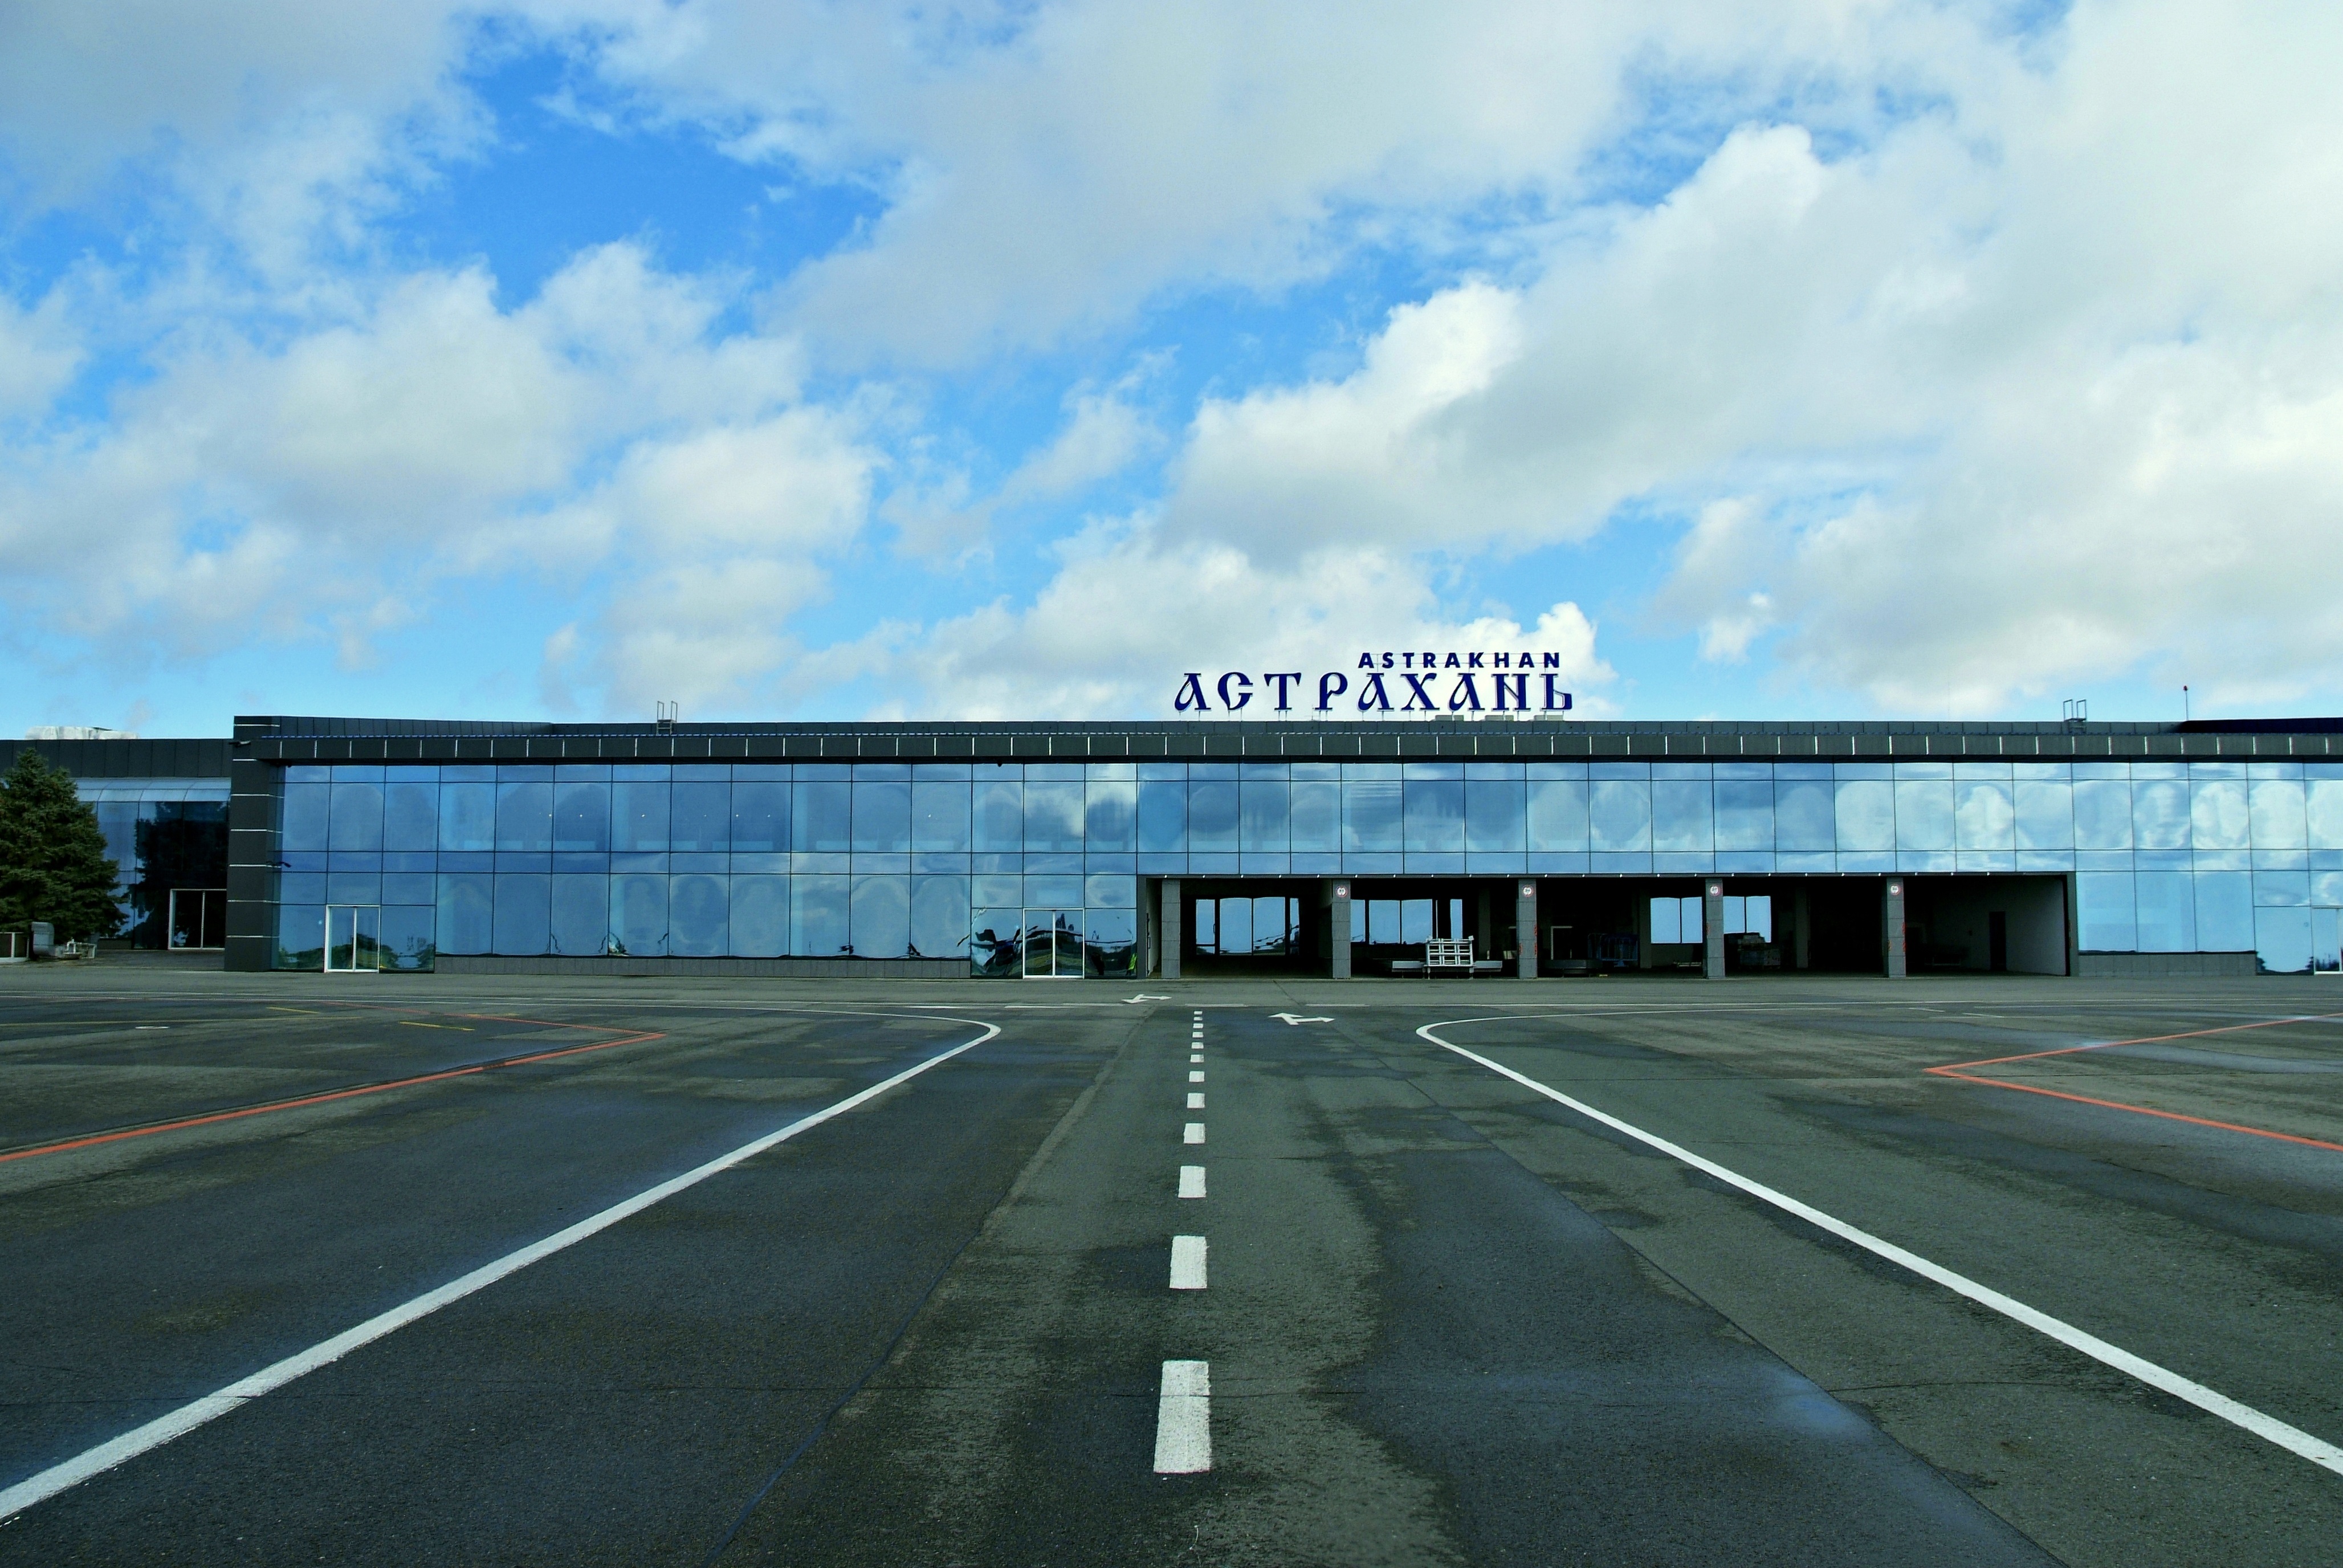 Аэропорт астрахани: официальный сайт, расписание рейсов